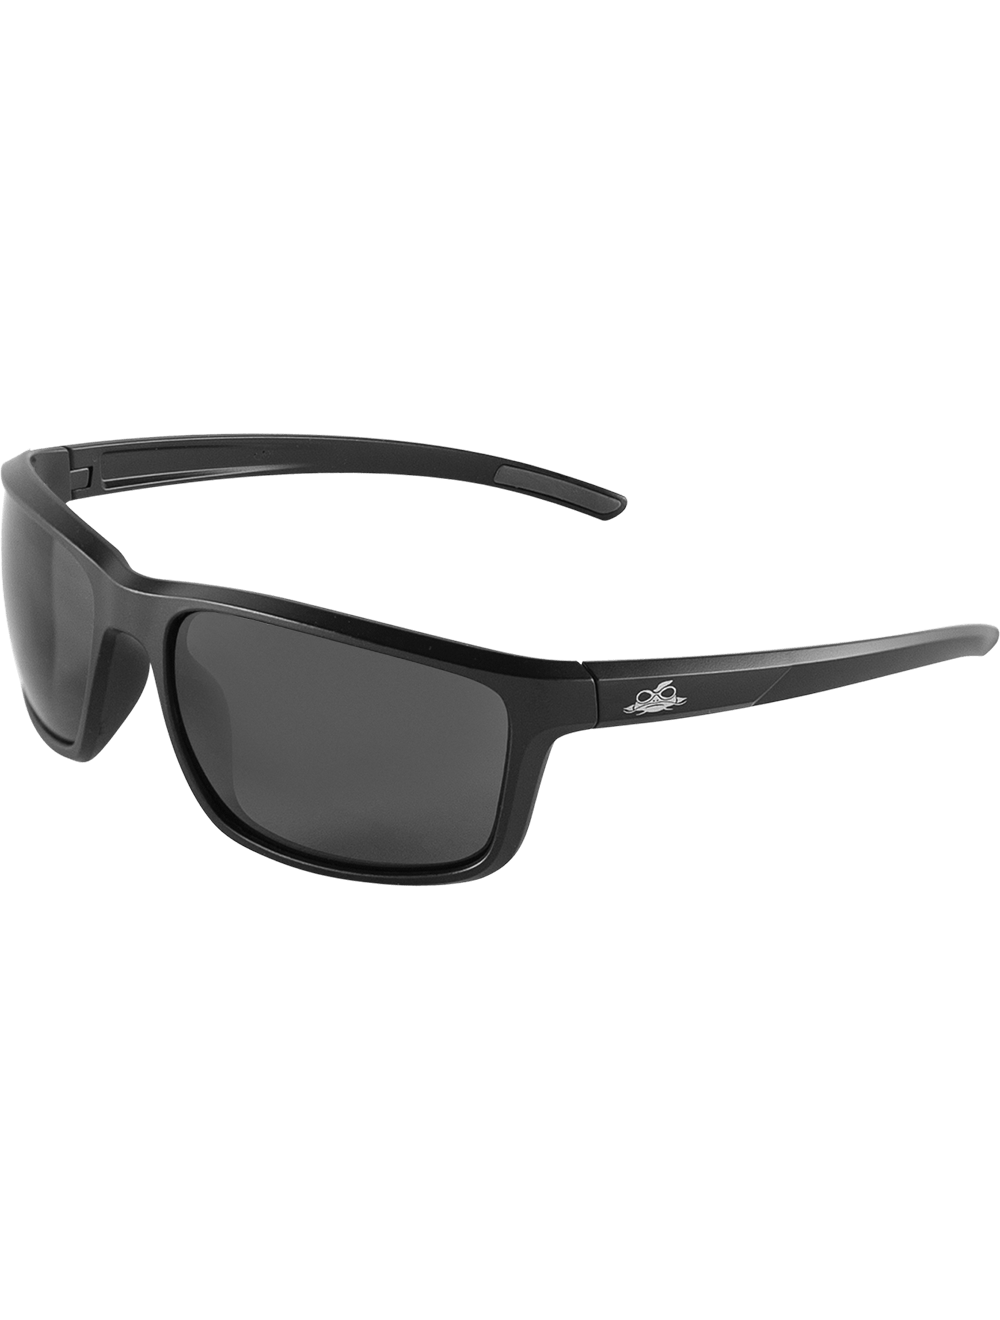 Pompano™ Smoke Anti-Fog Lens, Matte Black Frame Safety Glasses - BH2763AF